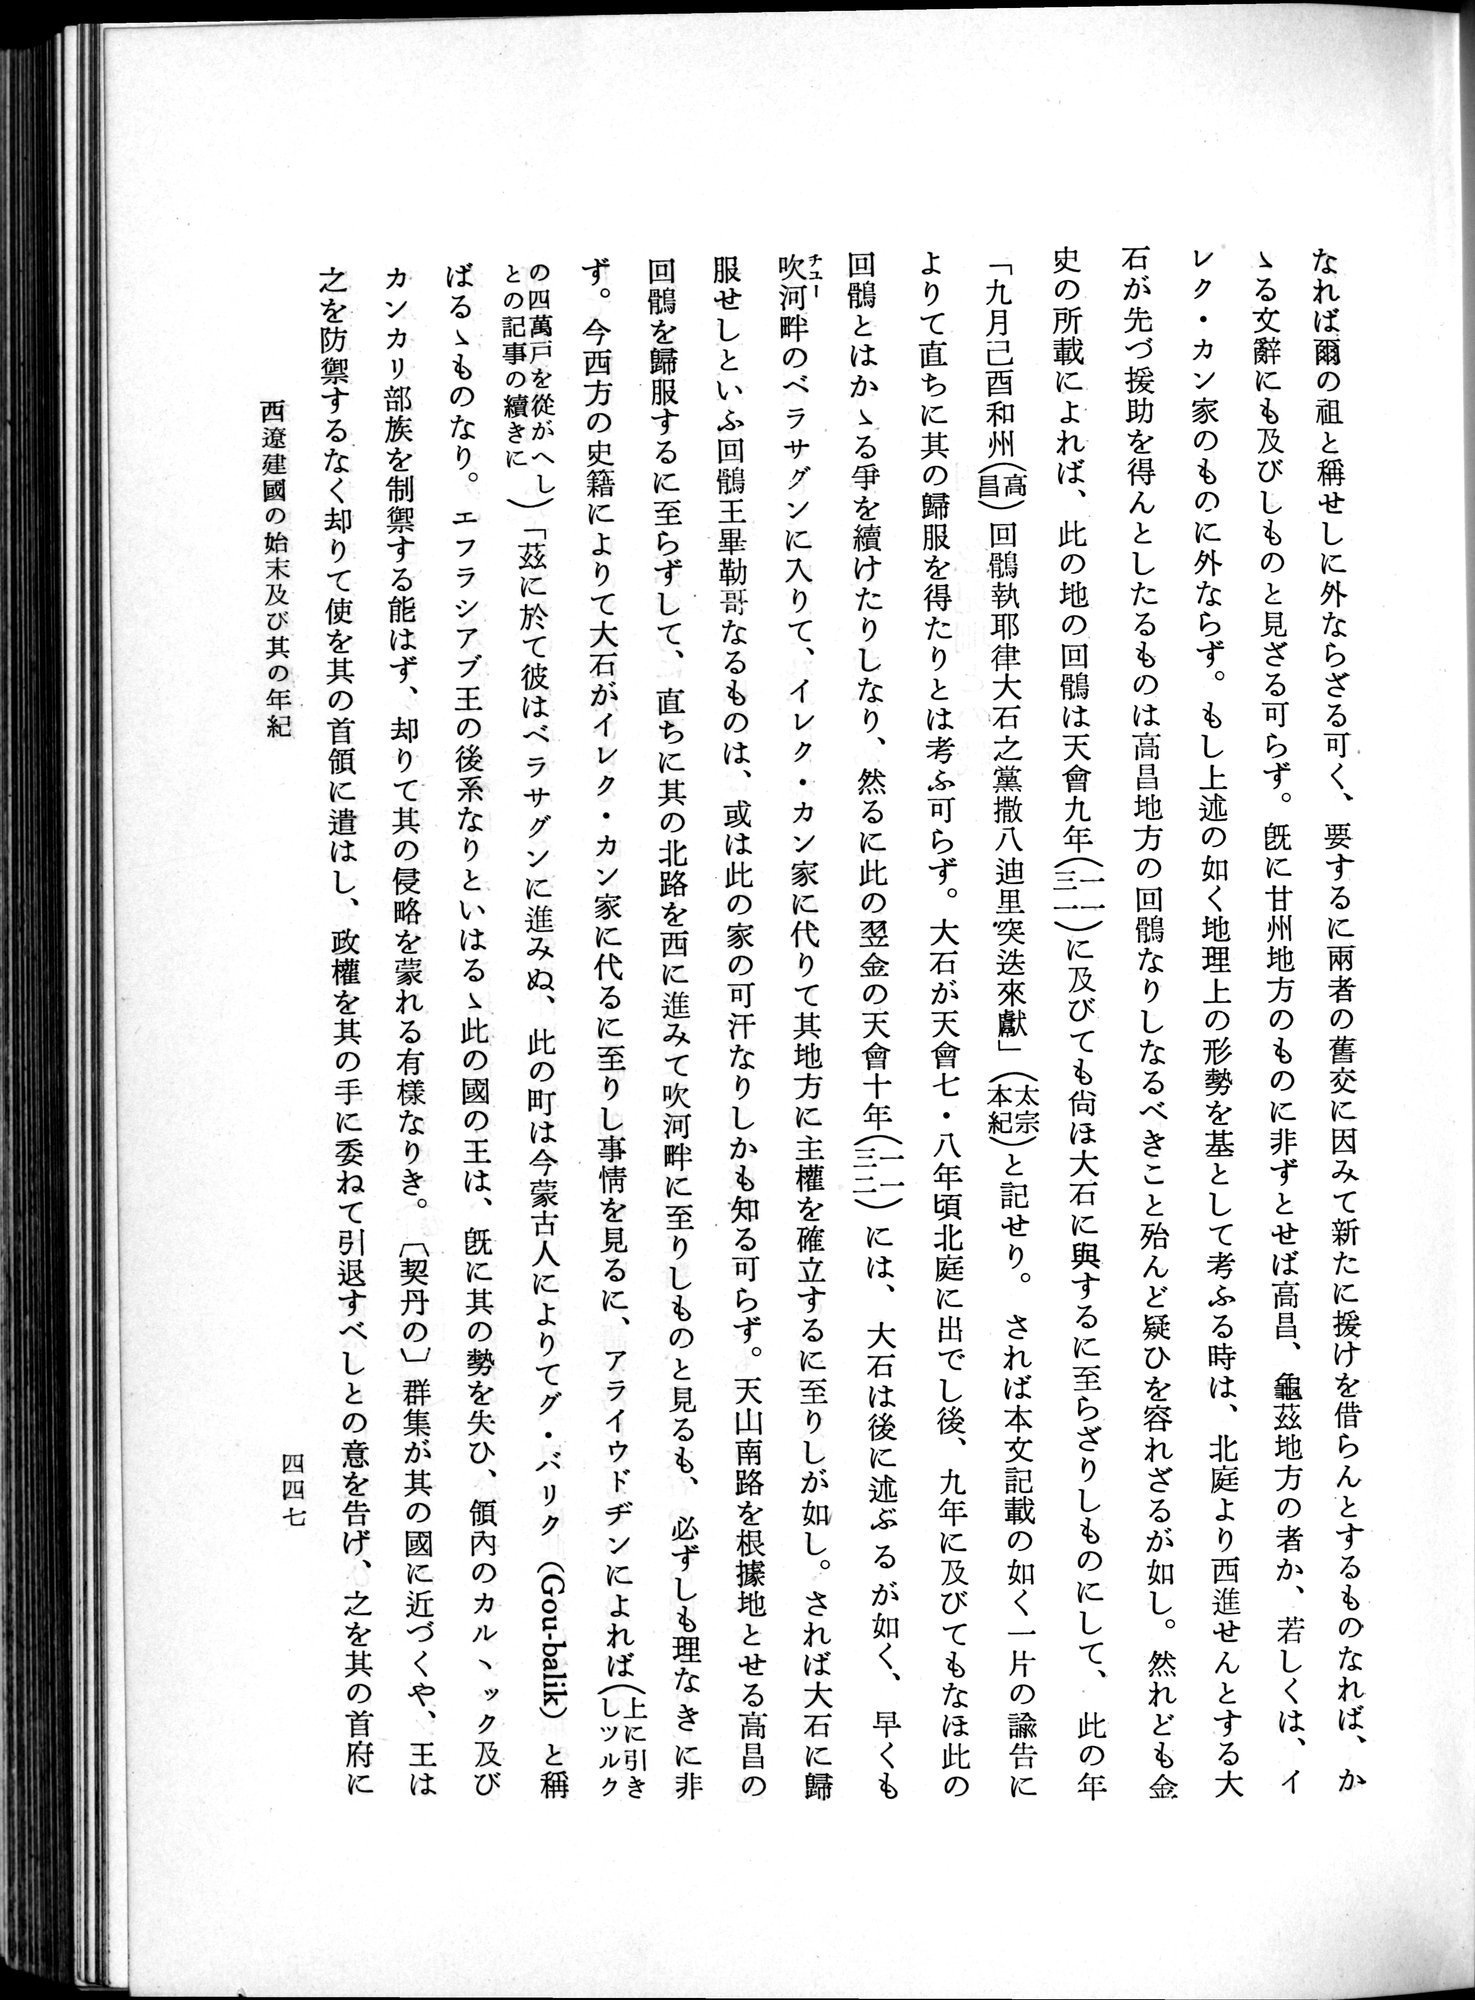 羽田博士史学論文集 : vol.1 / Page 485 (Grayscale High Resolution Image)